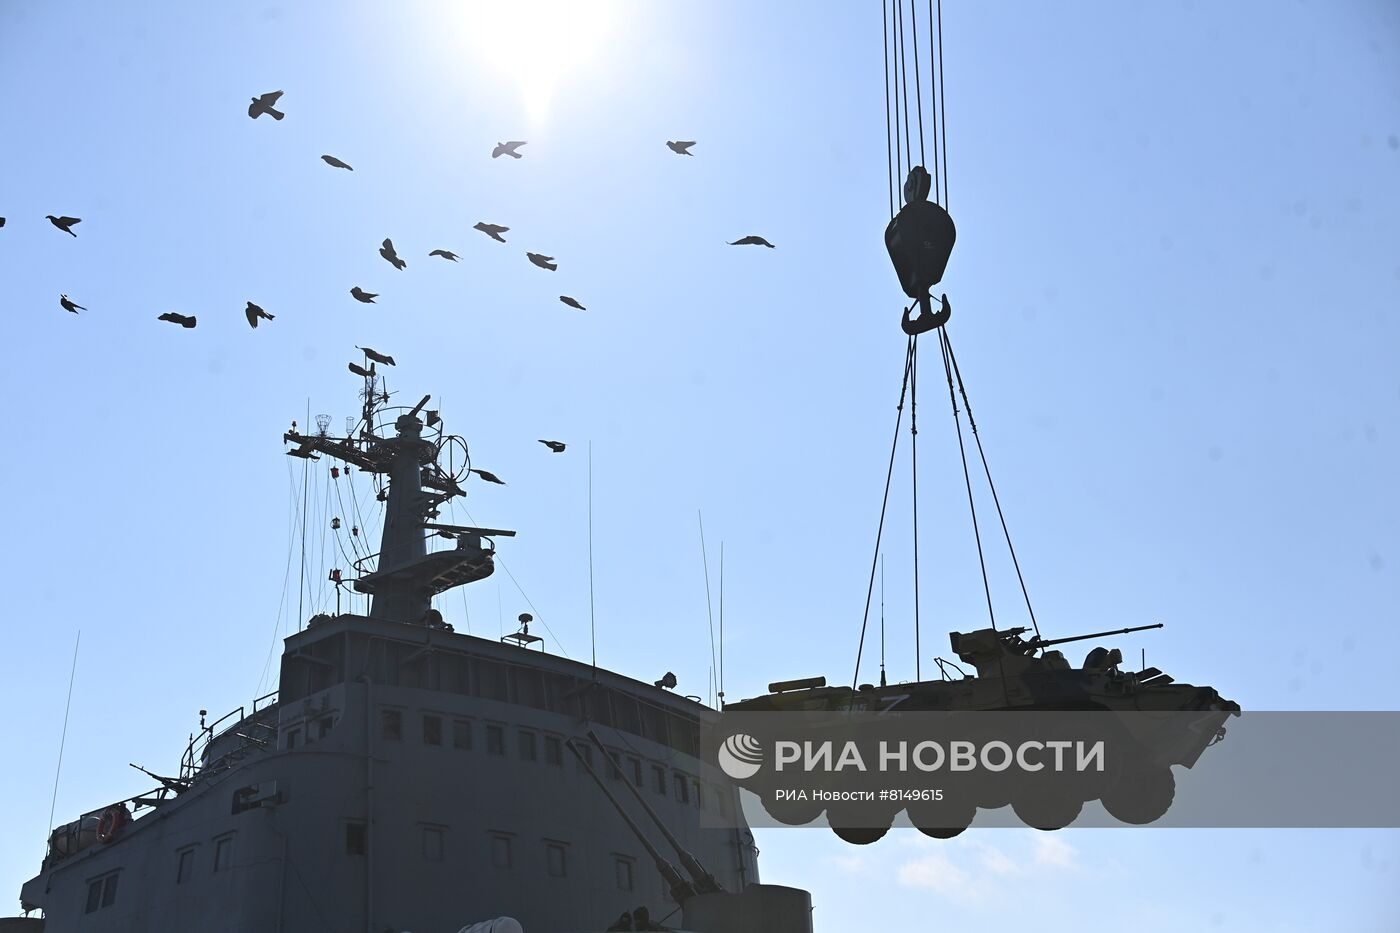 Первый российский корабль Черноморского флота "Орск" зашел в порт Бердянска 